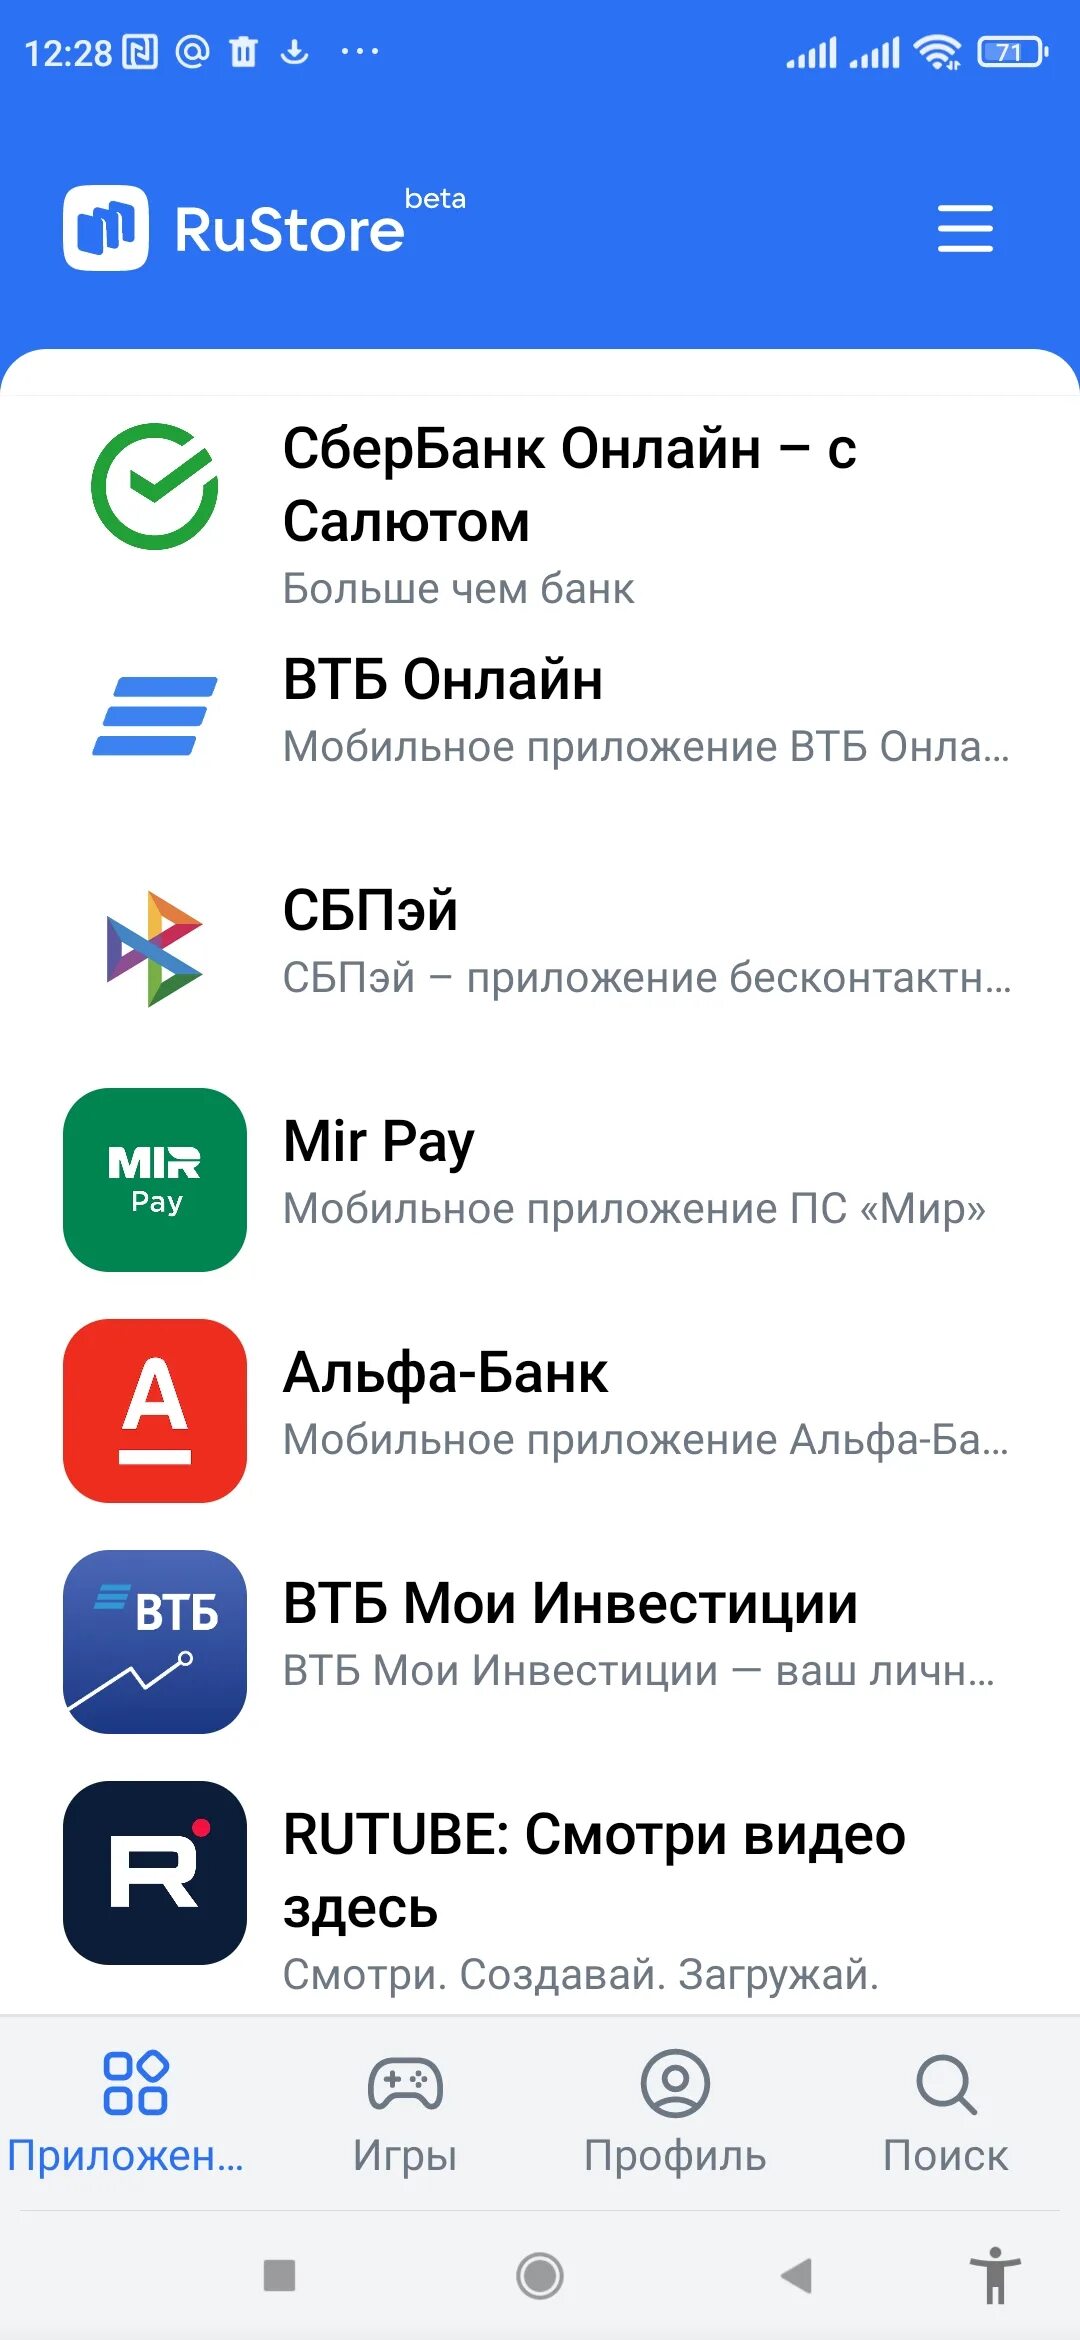 Рустор магазин приложений. Приложение Рустор для приложений. Российский магазин приложений. Российский магазин приложений для андроид.